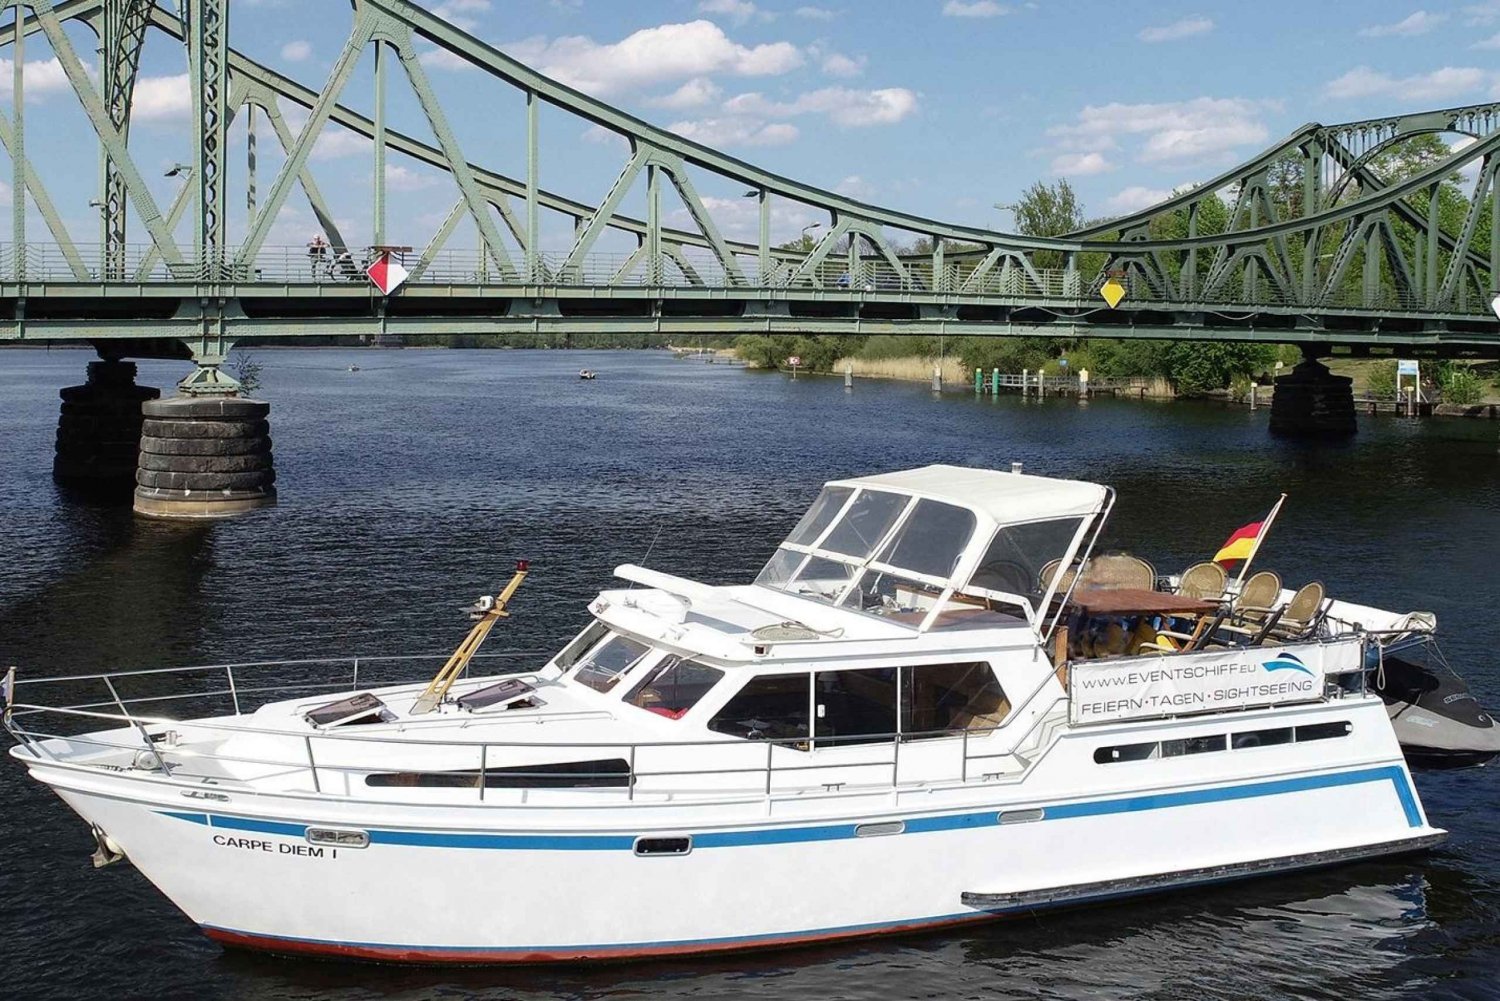 Potsdam: Crociera in barca - Laghi di Berlino - Castelli e natura